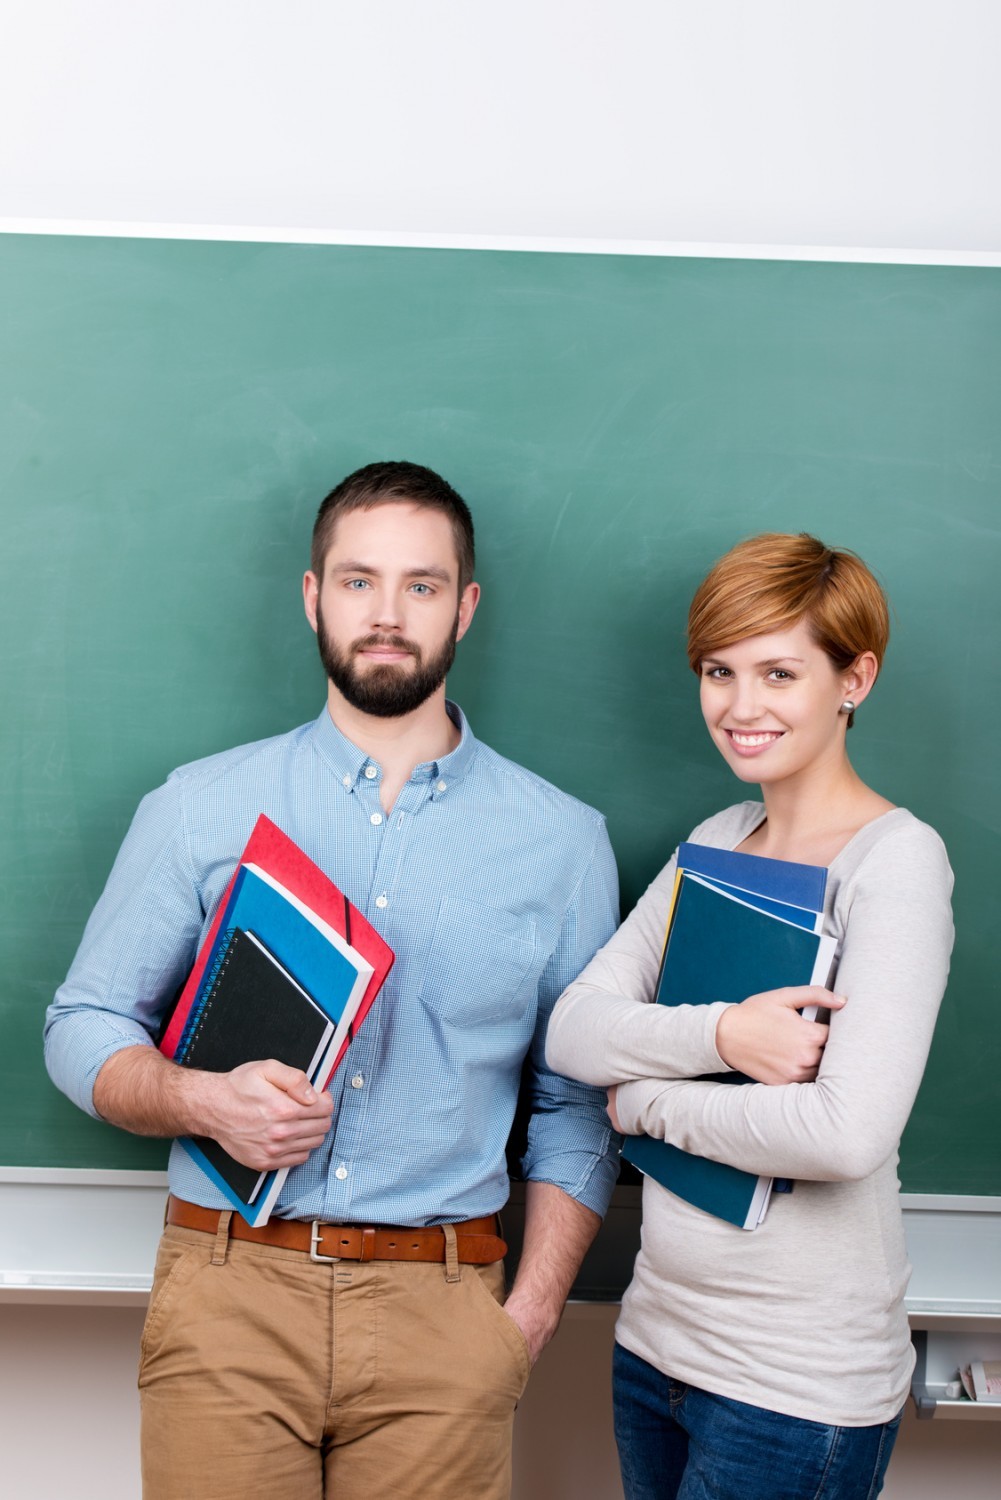 Enseignants stagiaires : nouvelles modalités d’évaluation et de titularisation